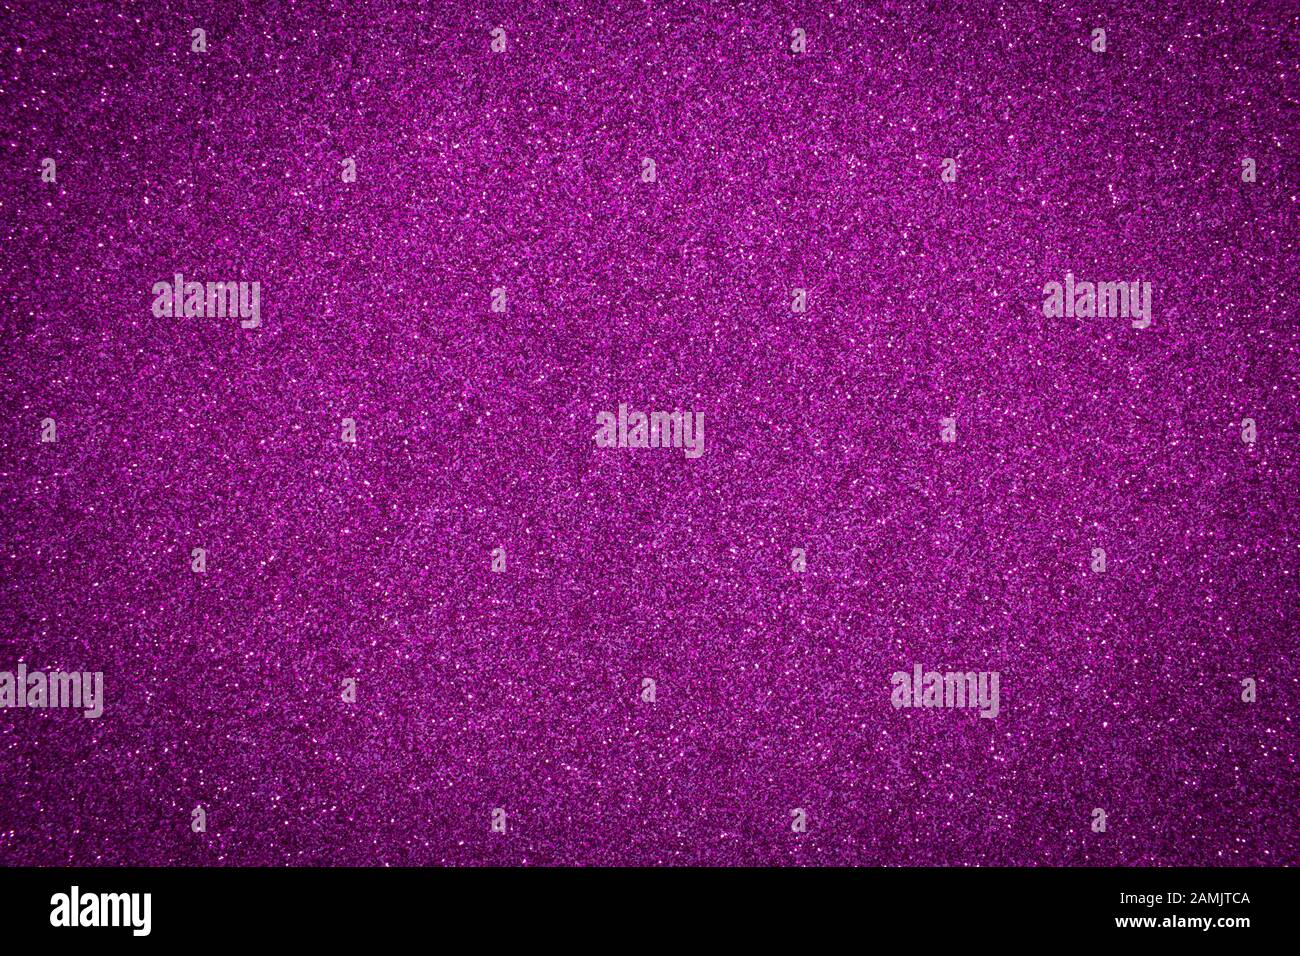 Luccicante glitter di fondo con texture viola. Sfondo di colore viola con effetto glitter. Foto Stock